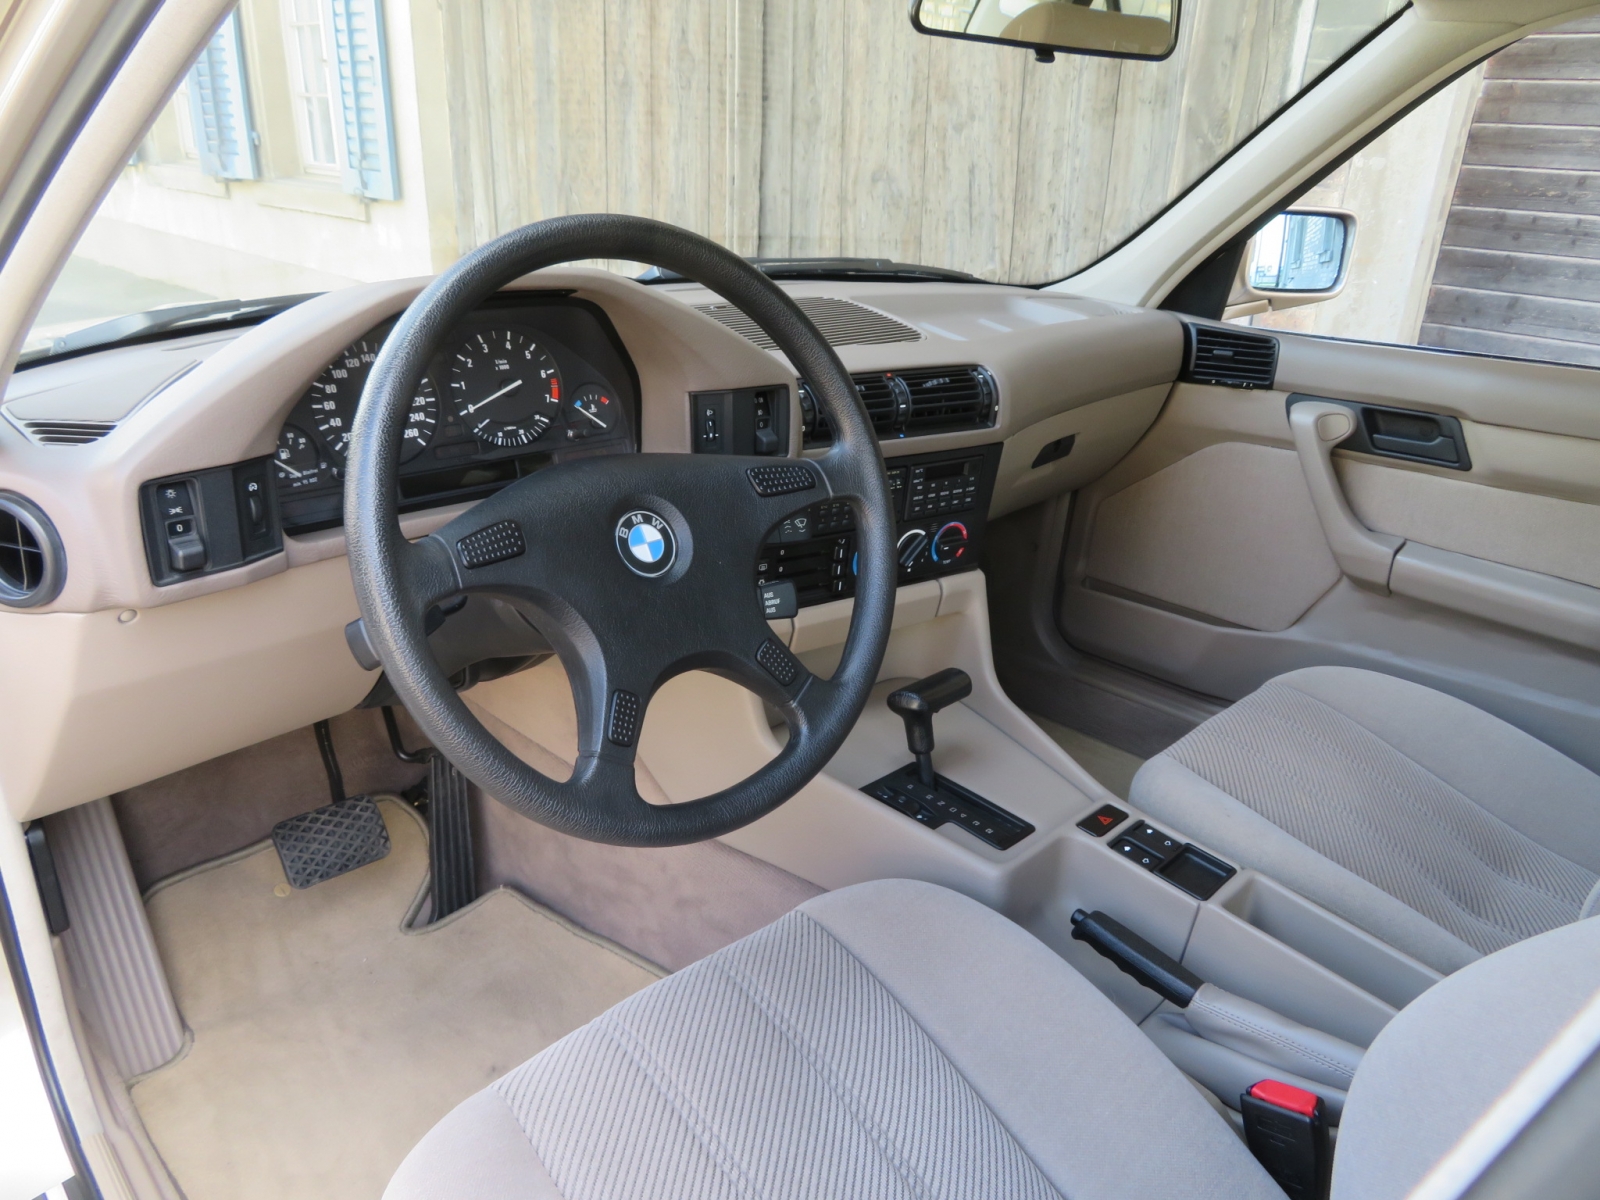 BMW 525i 24V A Limousine